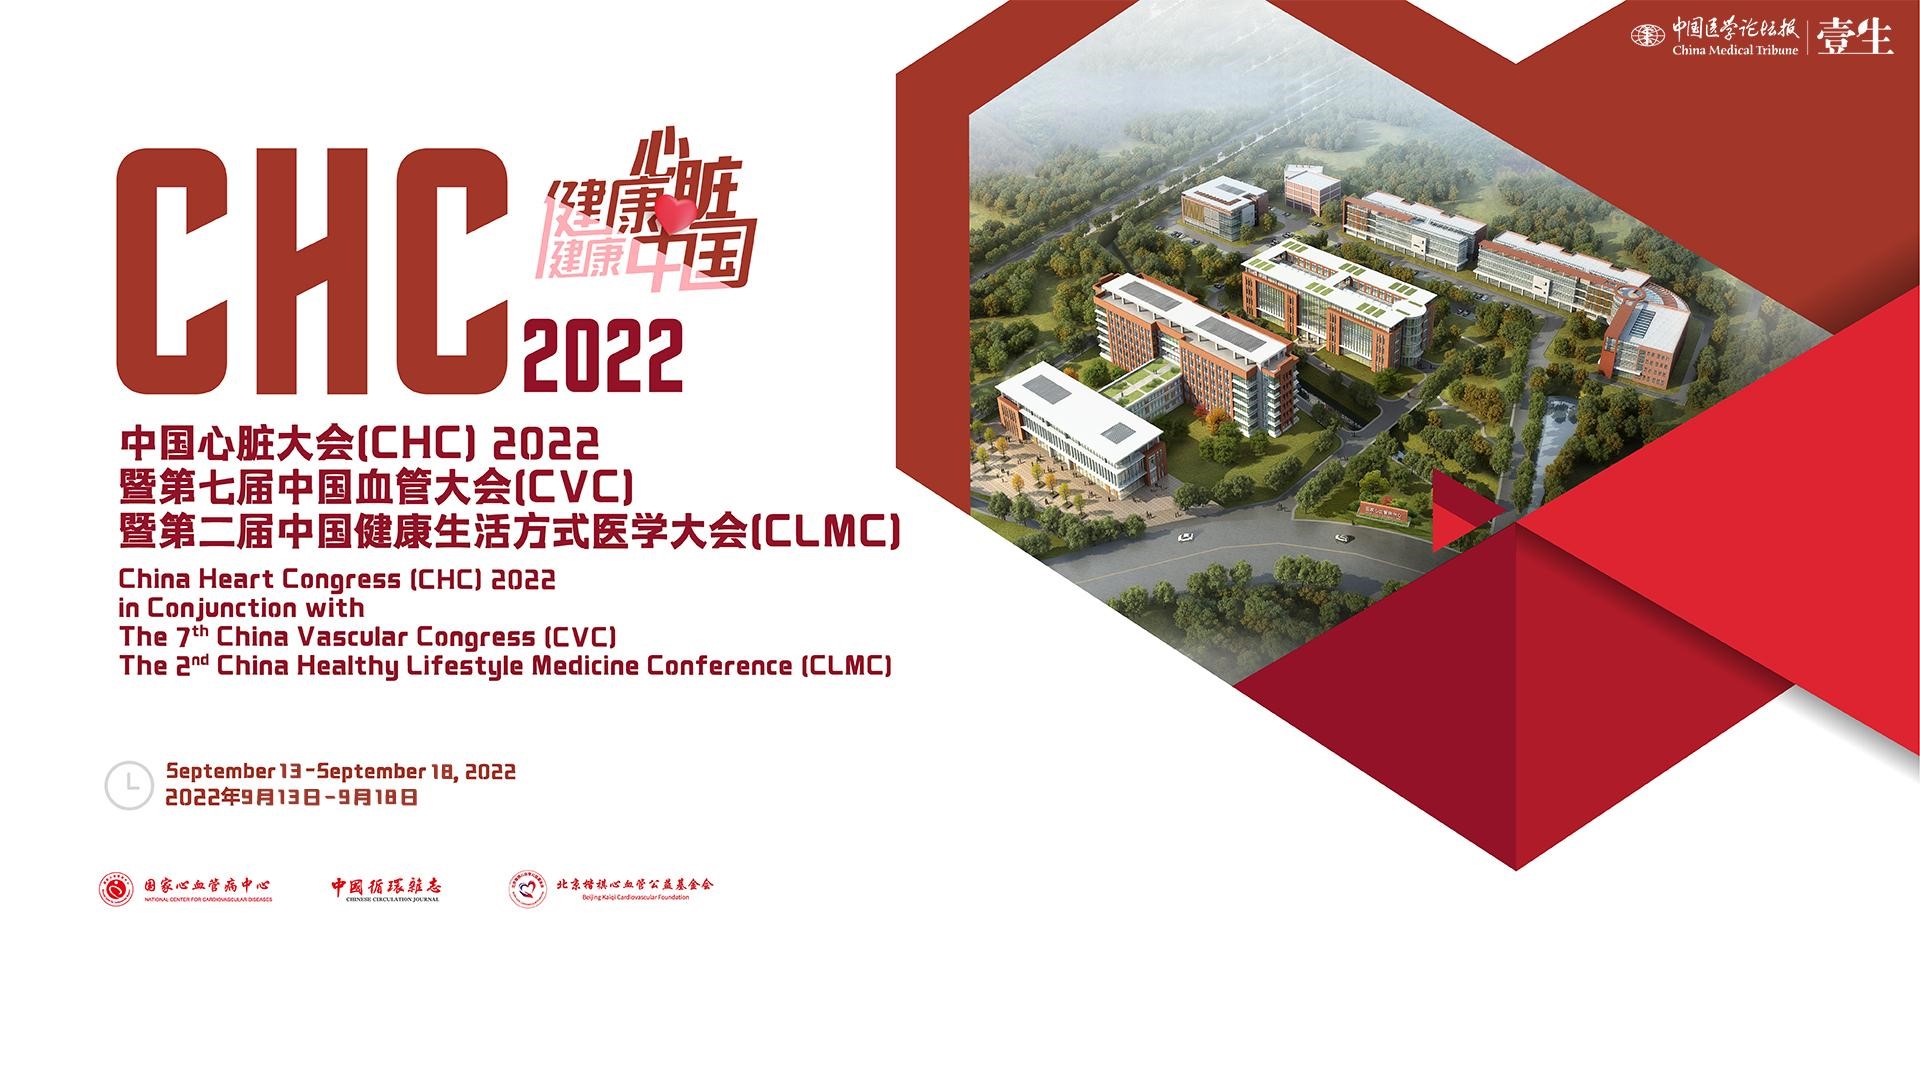 2022中国心脏大会（CHC）暨2022第七届中国血管大会（CVC）暨第二届健康生活方式医学大会（CHMC）